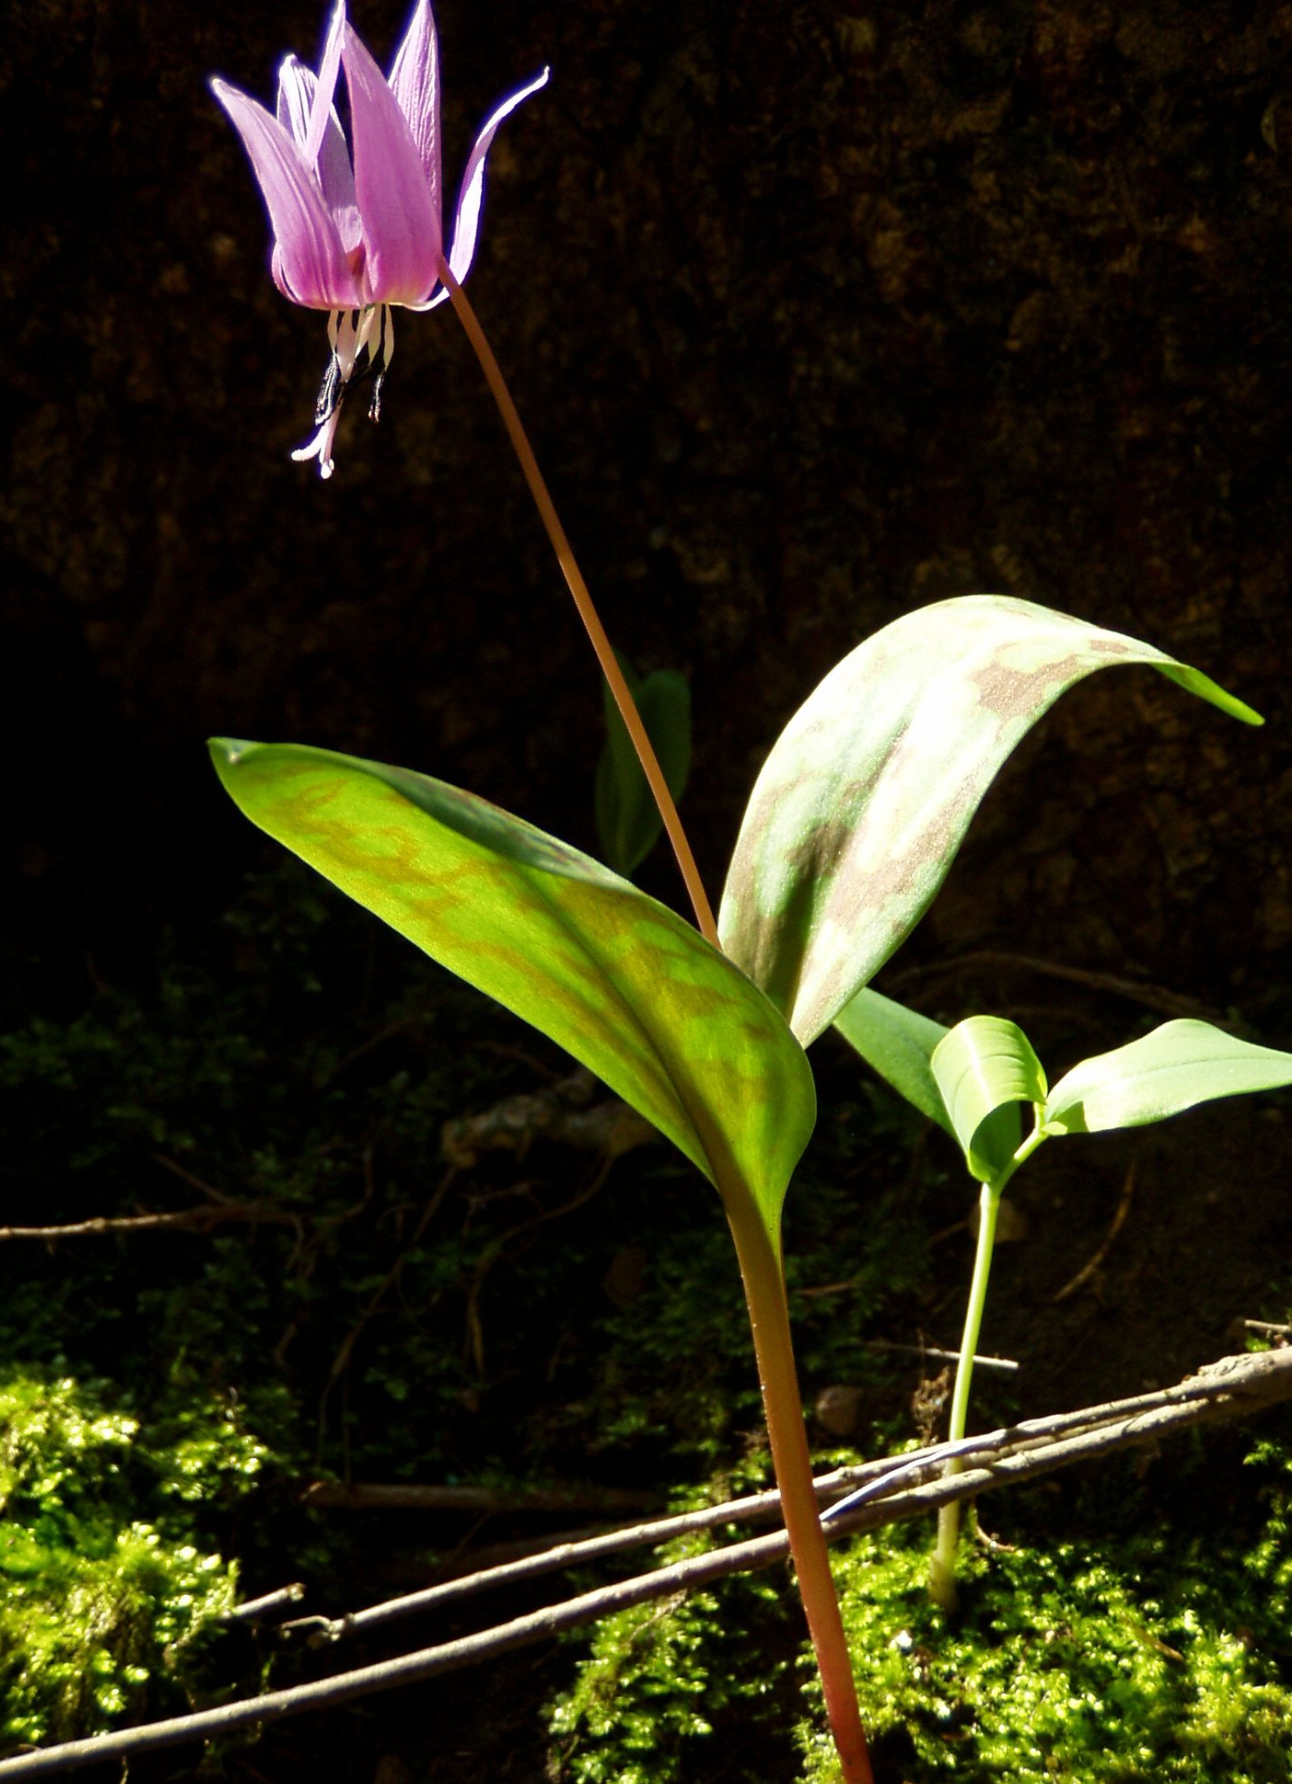 1 bulb Erythronium dens-canis, the dog's-tooth-violet or dogtooth violet, Erythronium, terrarium plants